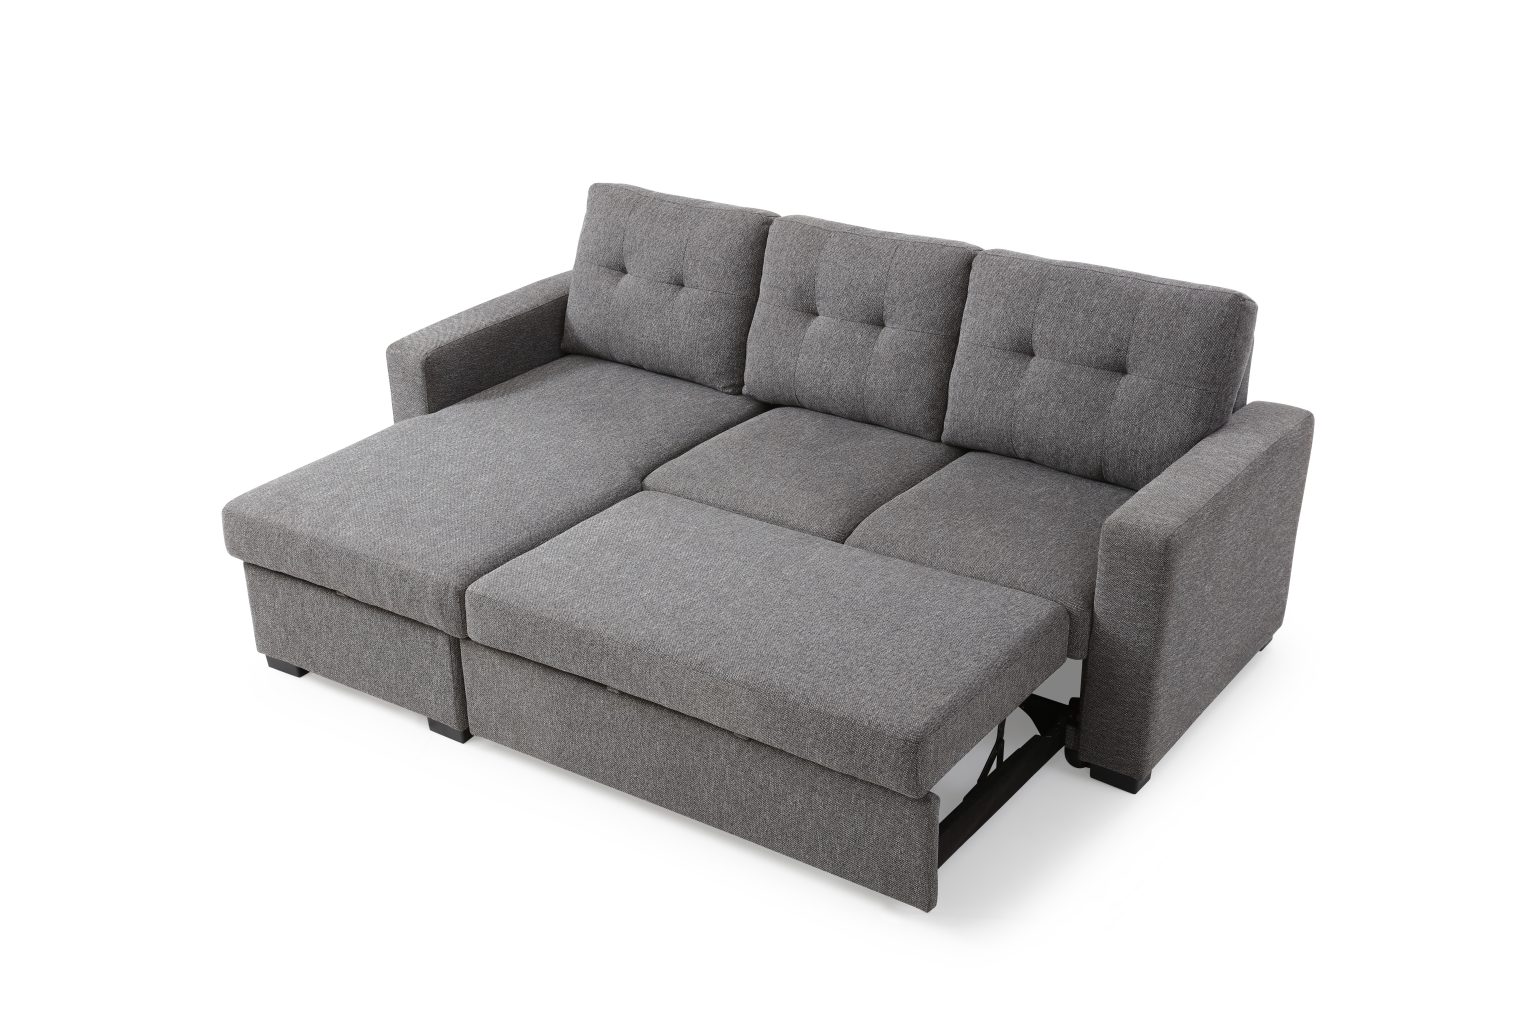 cheap sofa beds ikea uk